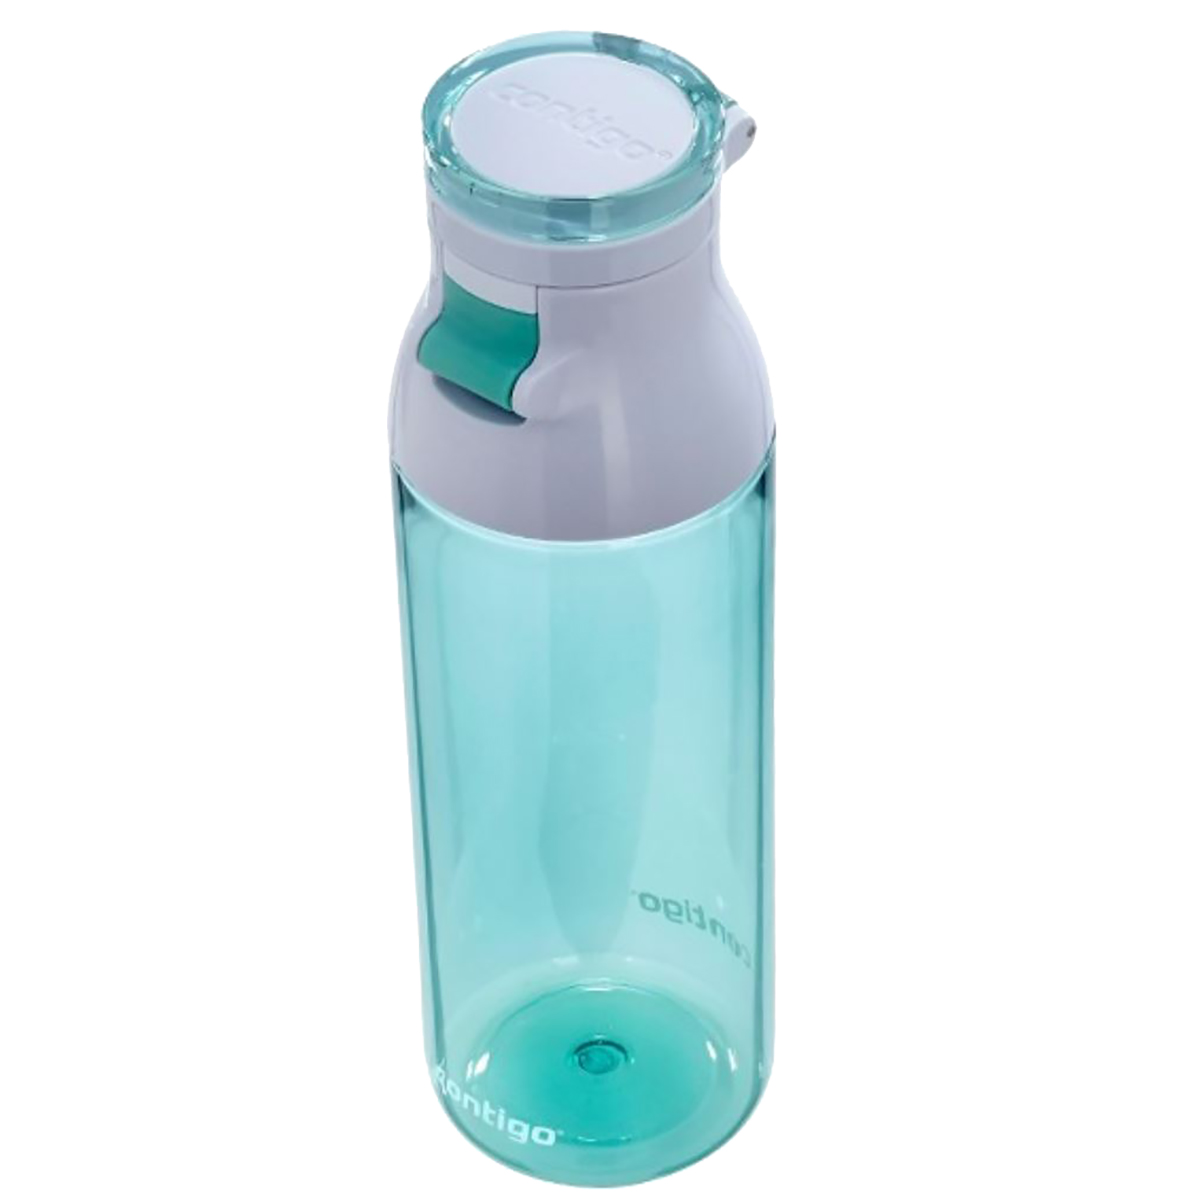 Contigo Jackson Reusable Water Bottle, 24 oz., Grayed Jade - image 3 of 3